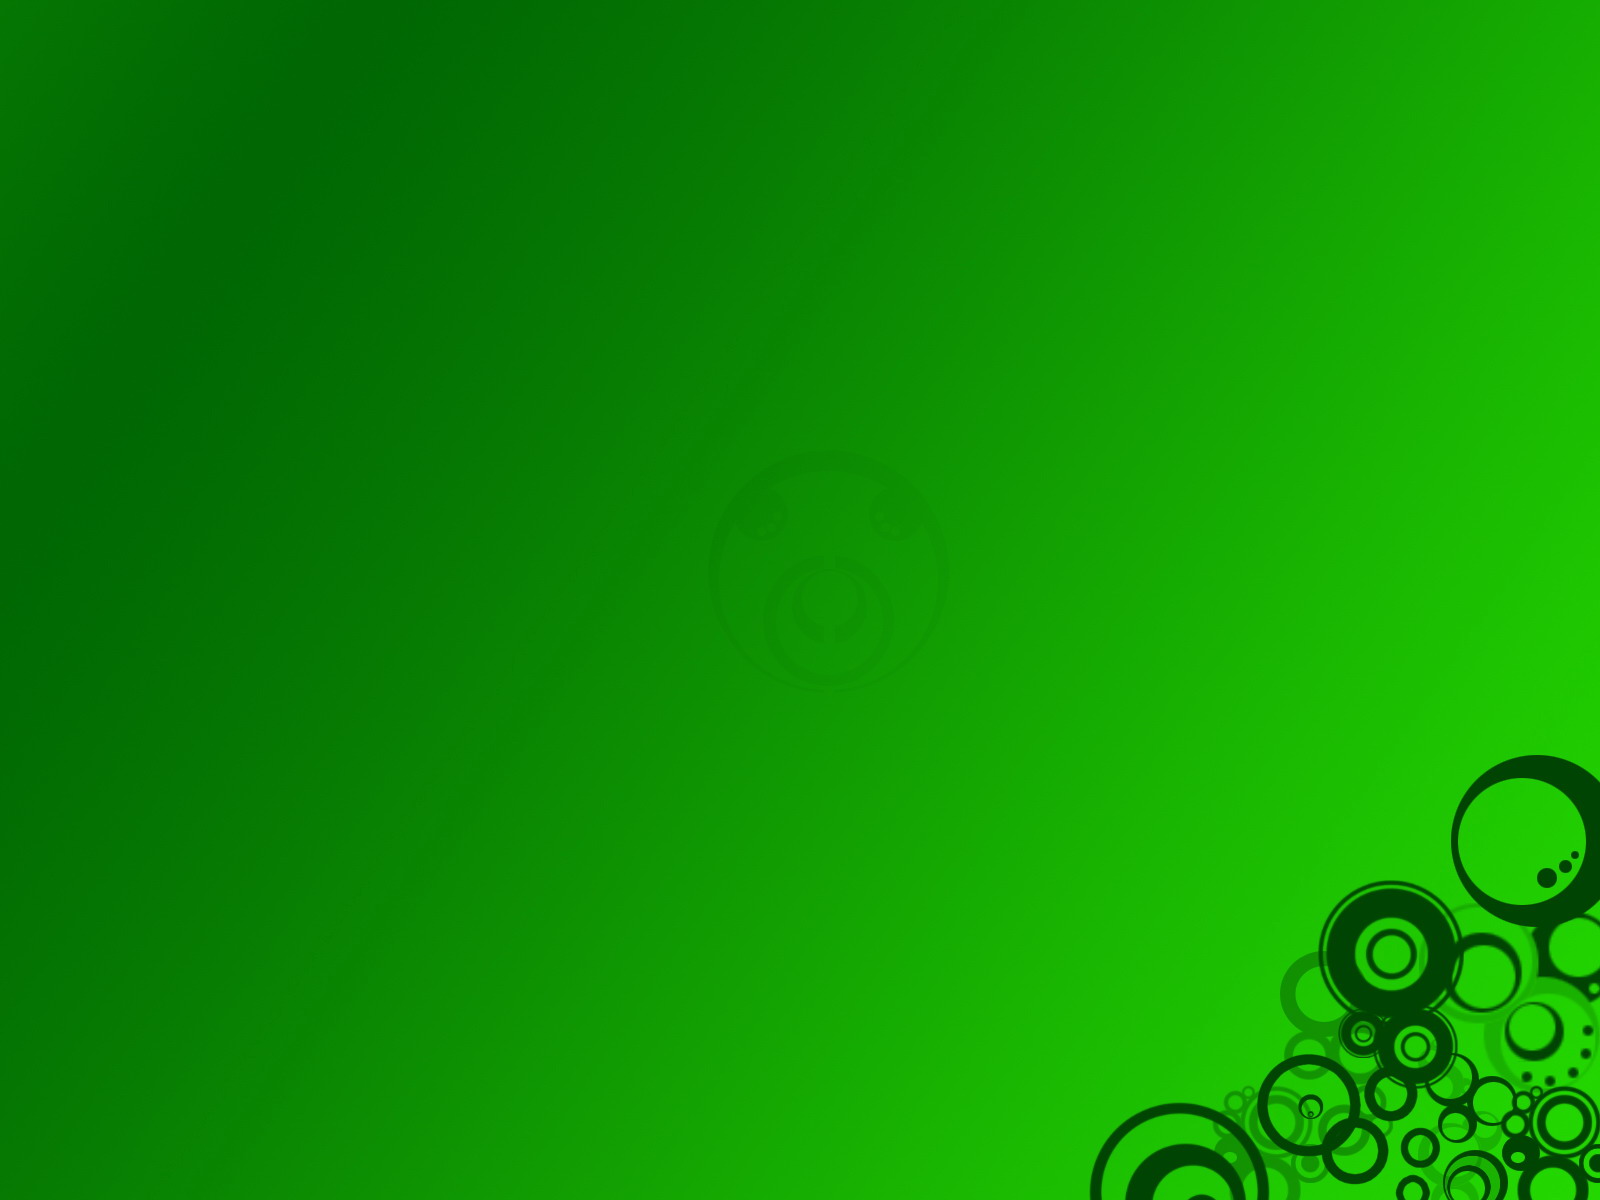 A Place For HD Wallpaper Desktop Green